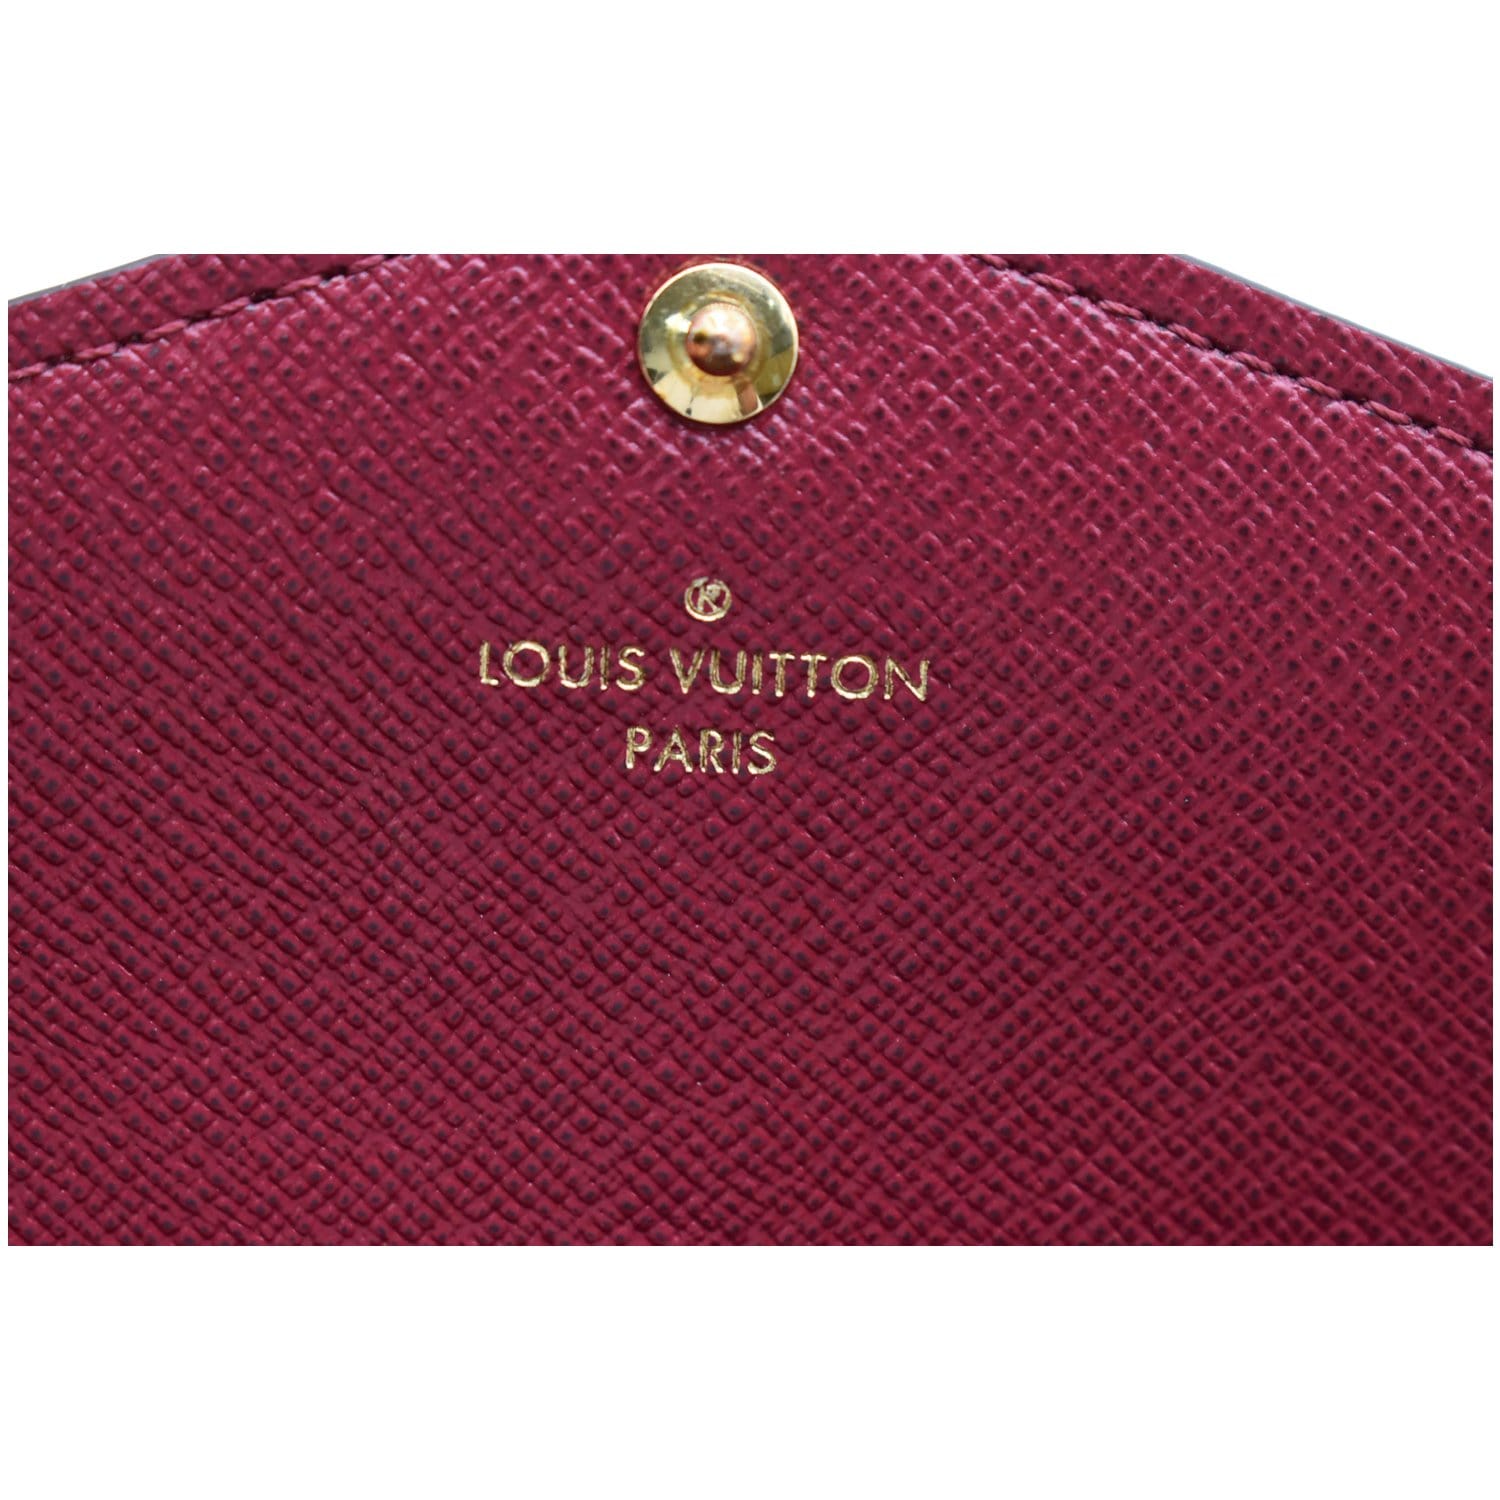 Authentic Louis Vuitton Monogram Canvas Sarah Wallet Date Code: 8911AN